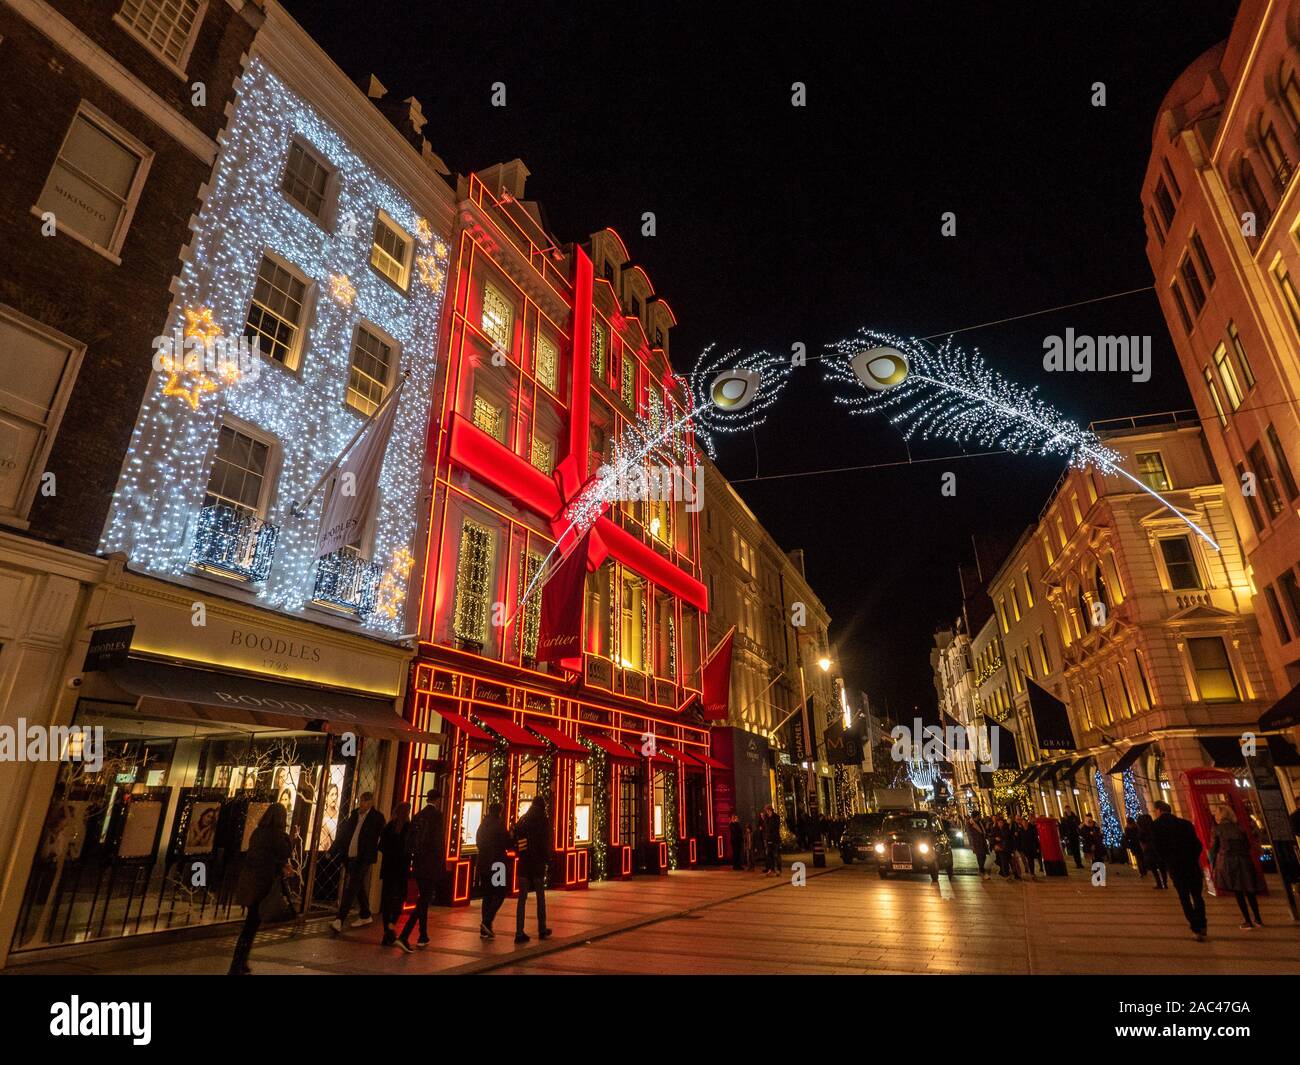 Luci festive in New Bond Street di notte con la facciata rossa di Cartier, Mayfair, Londra. Foto Stock